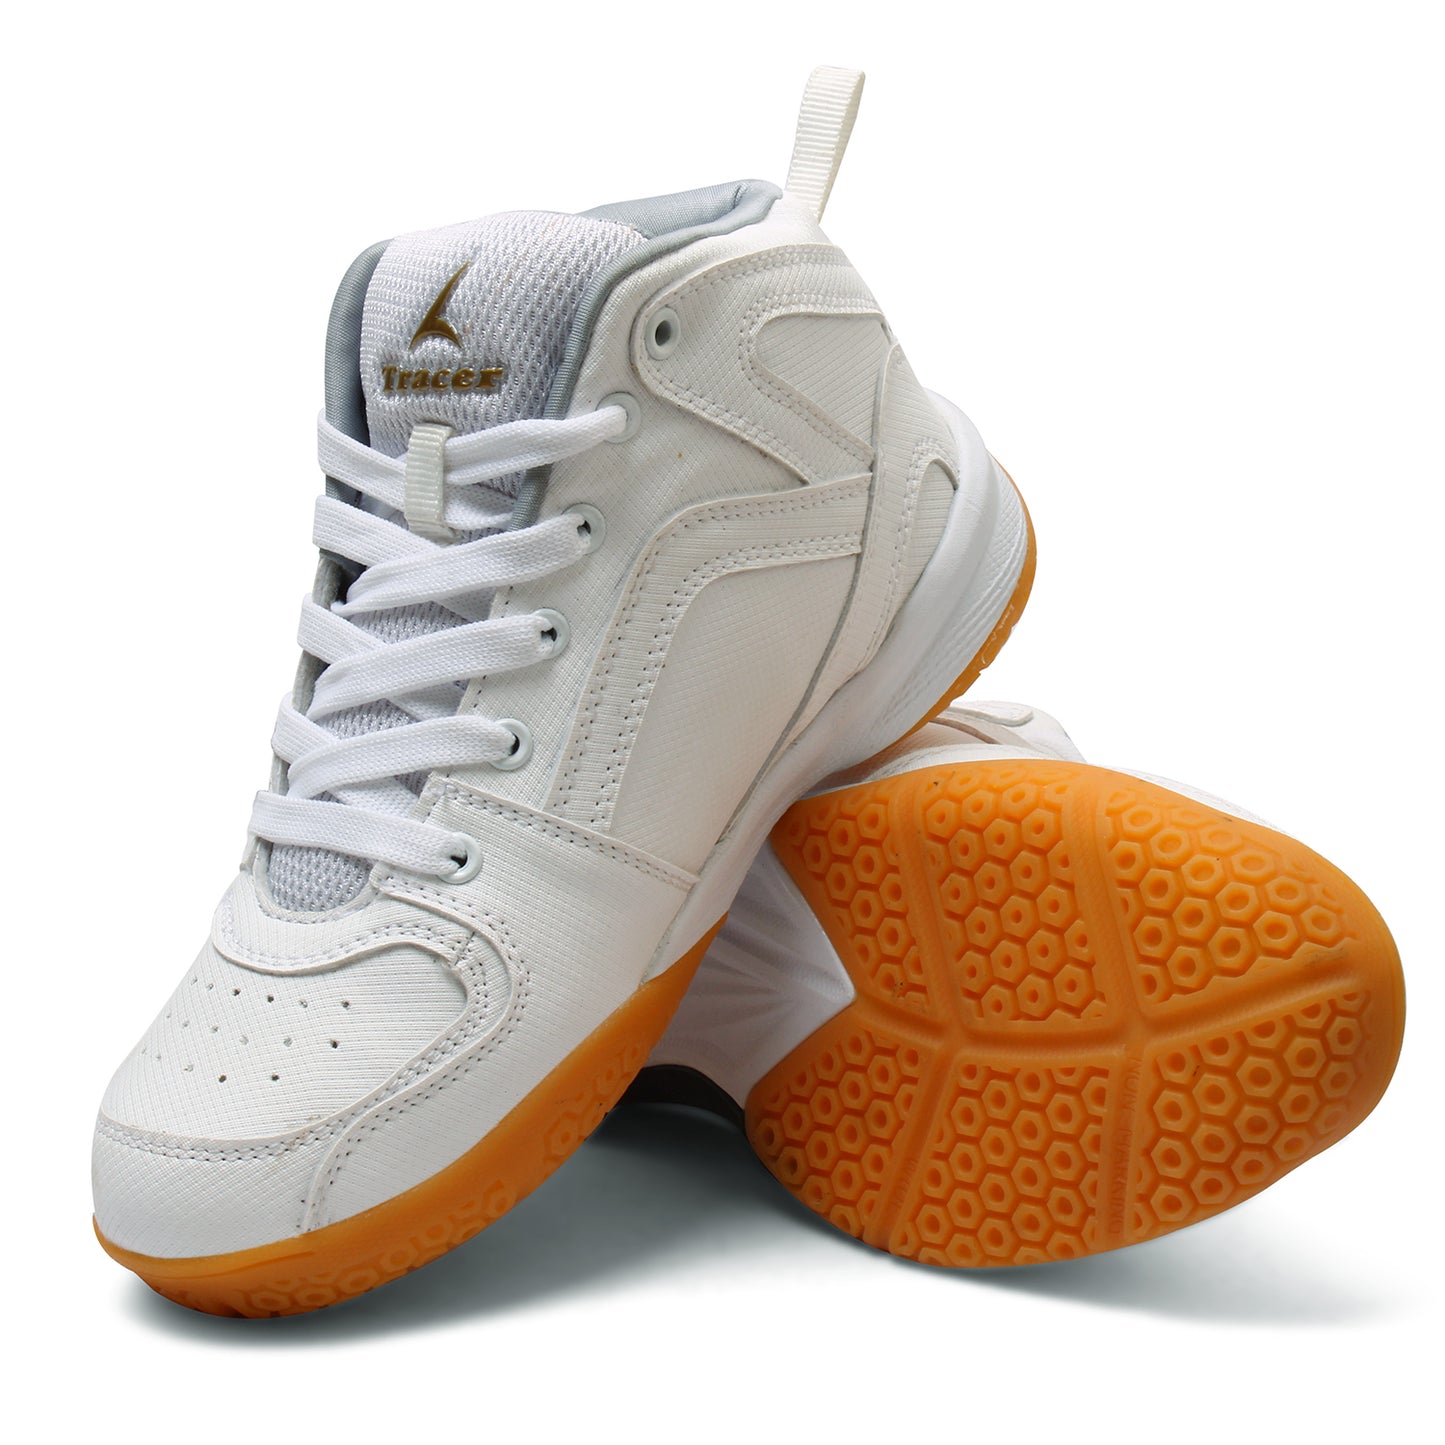 Tracer Jumpstart 1705 Basketball Sports Shoe for Kid's White